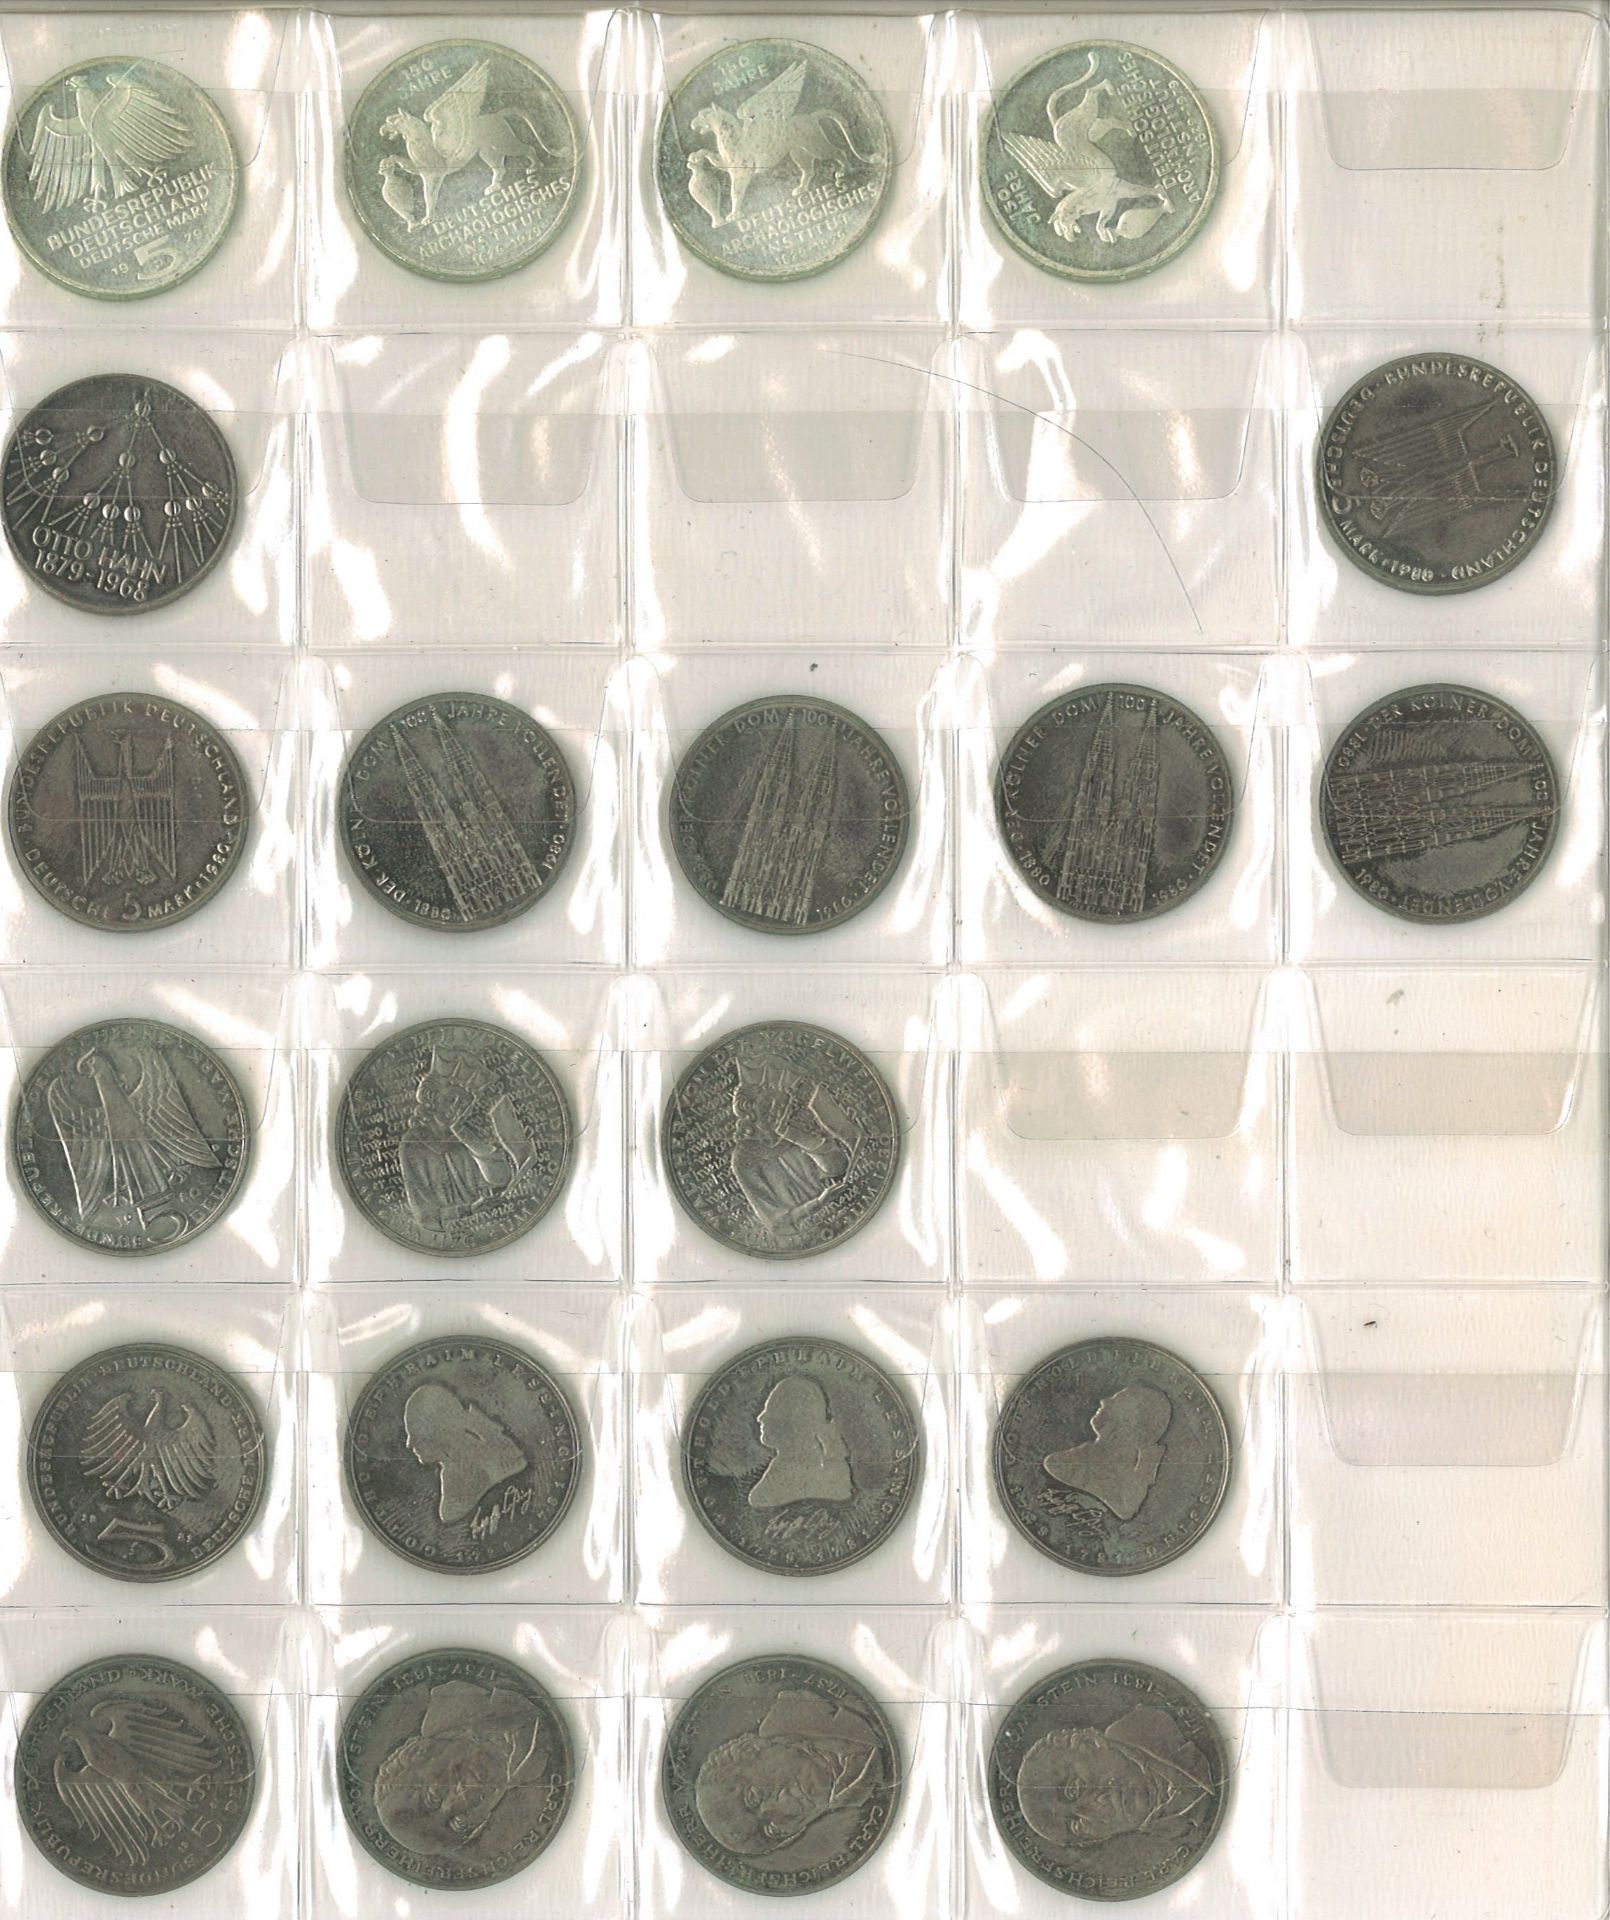 BRD Sammlung 2 + 5 Mark Stücke, bestehend aus 30 x 2 Mark und 71x 5 Mark. 415 Mark Nennwert - Image 2 of 5